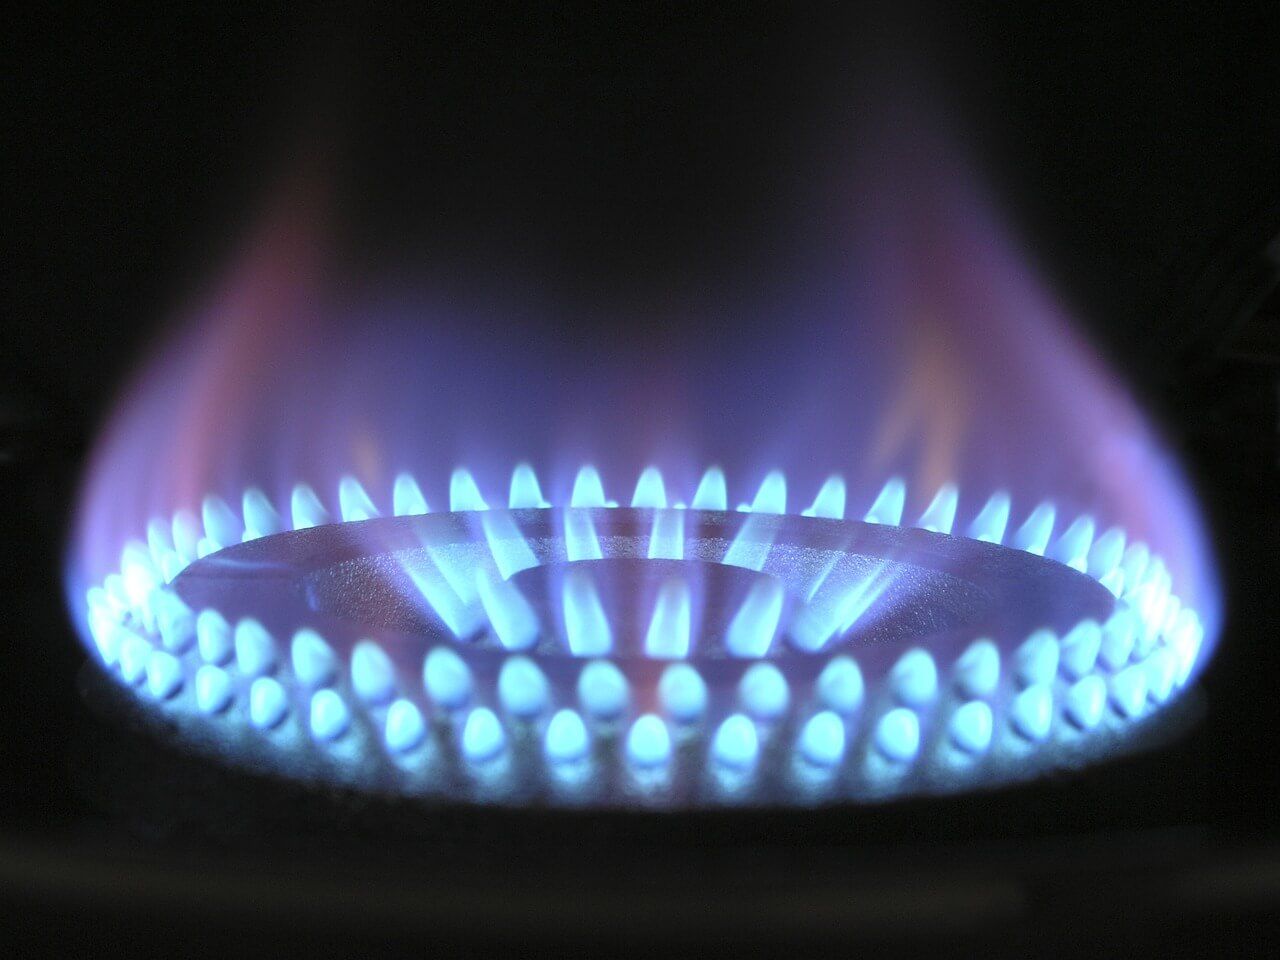 KALKULAČKA: Zajímá vás, kolik budete za plyn platit po zastropování cen?